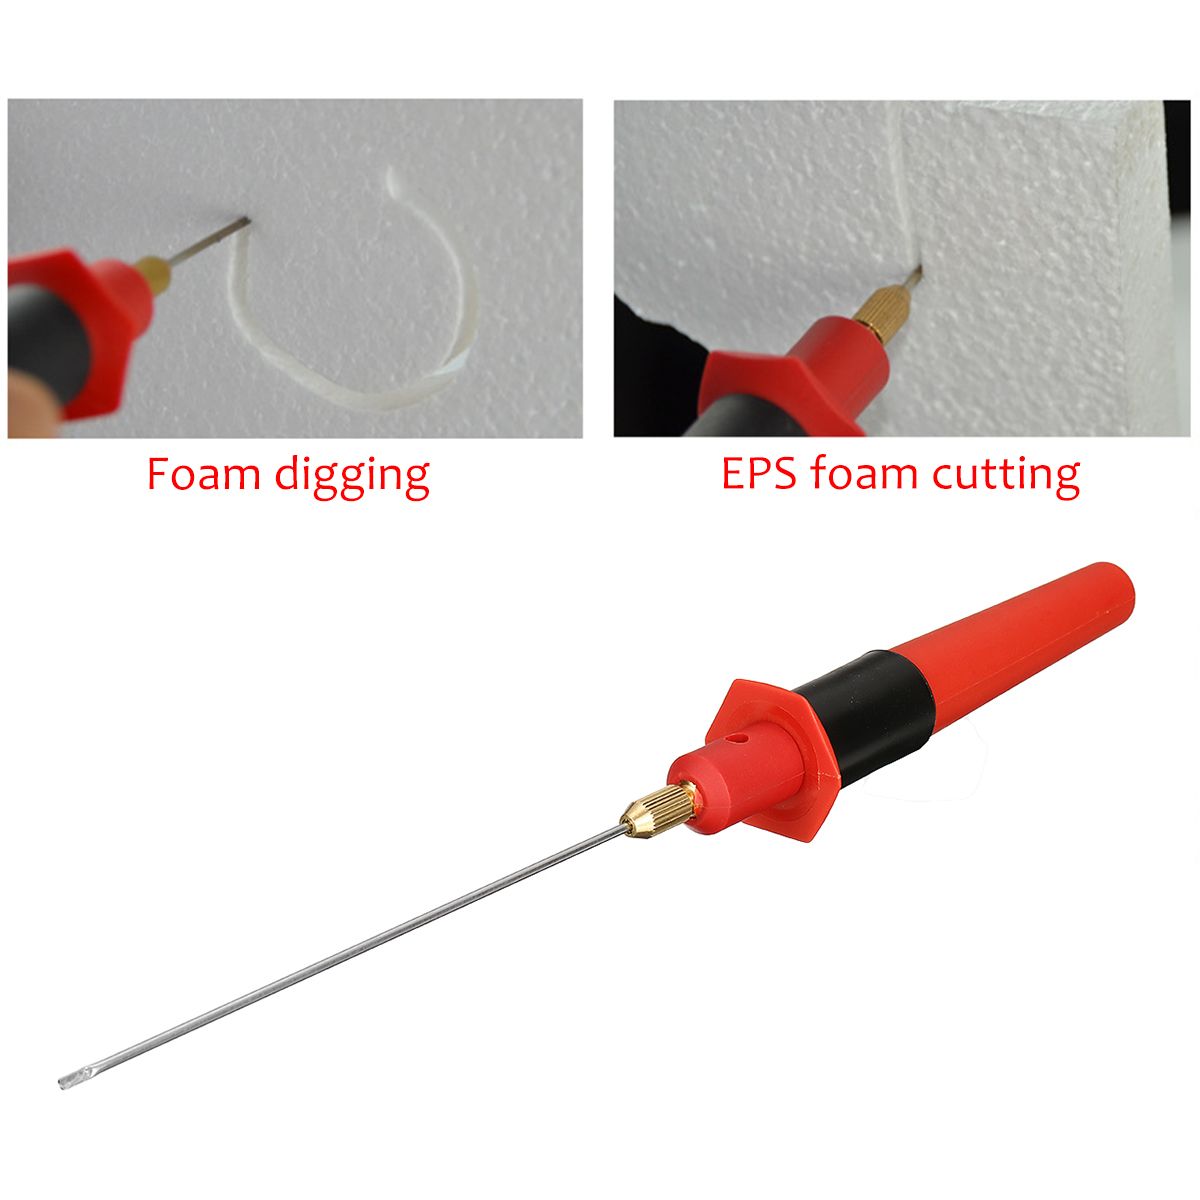 135mm-Foam-Cutter-Pen-24W-Electric-Foam-Polystyrene-Cutting-DIY-Cutter-Machine-1649972